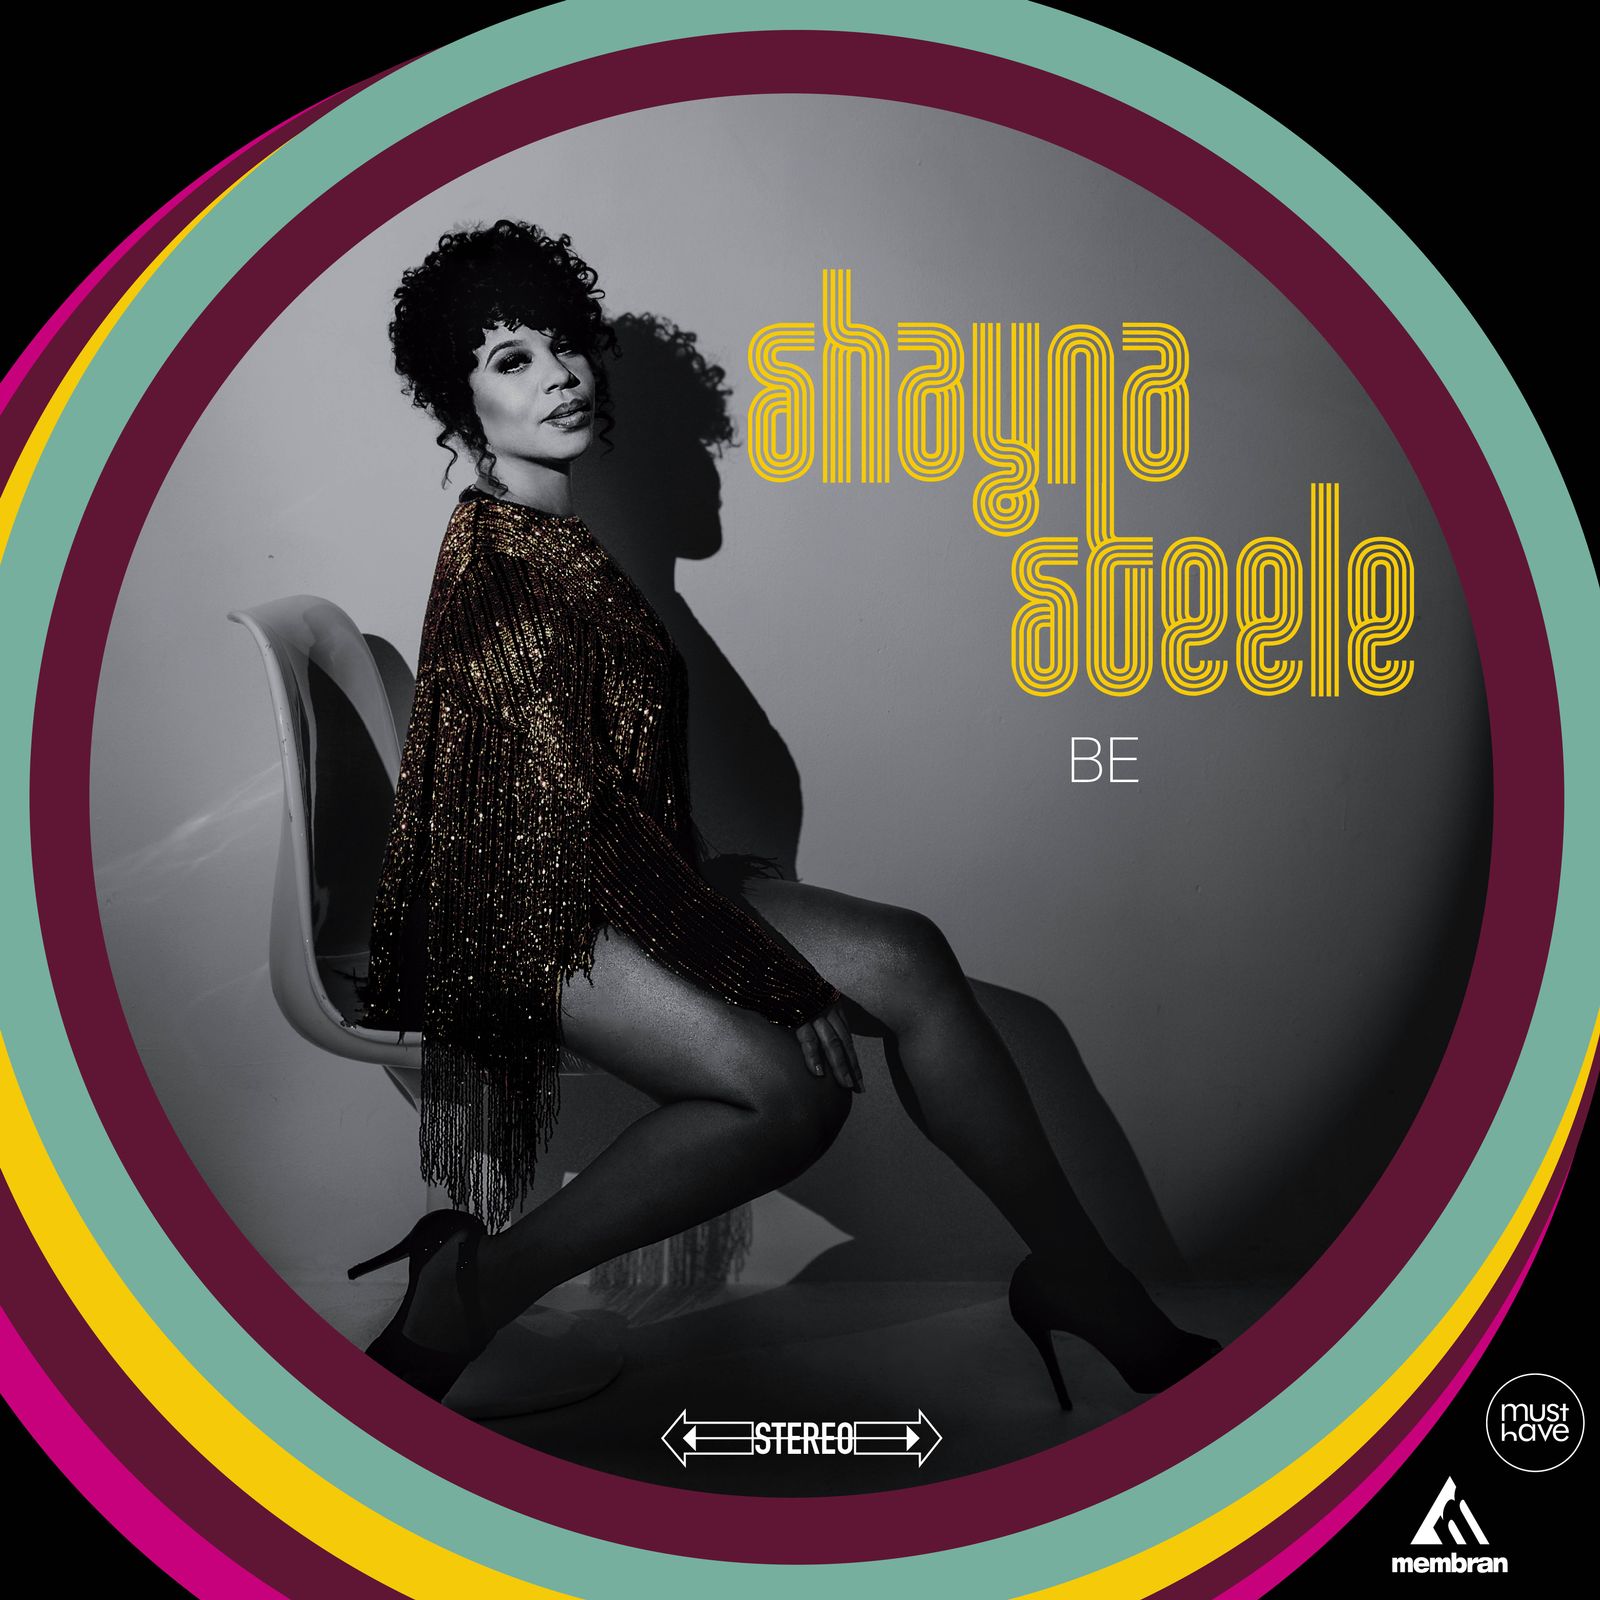 Du doute à la révélation, Shayna Steele se découvre et se laisse découvrir via son troisième album “WATCH ME FLY”.